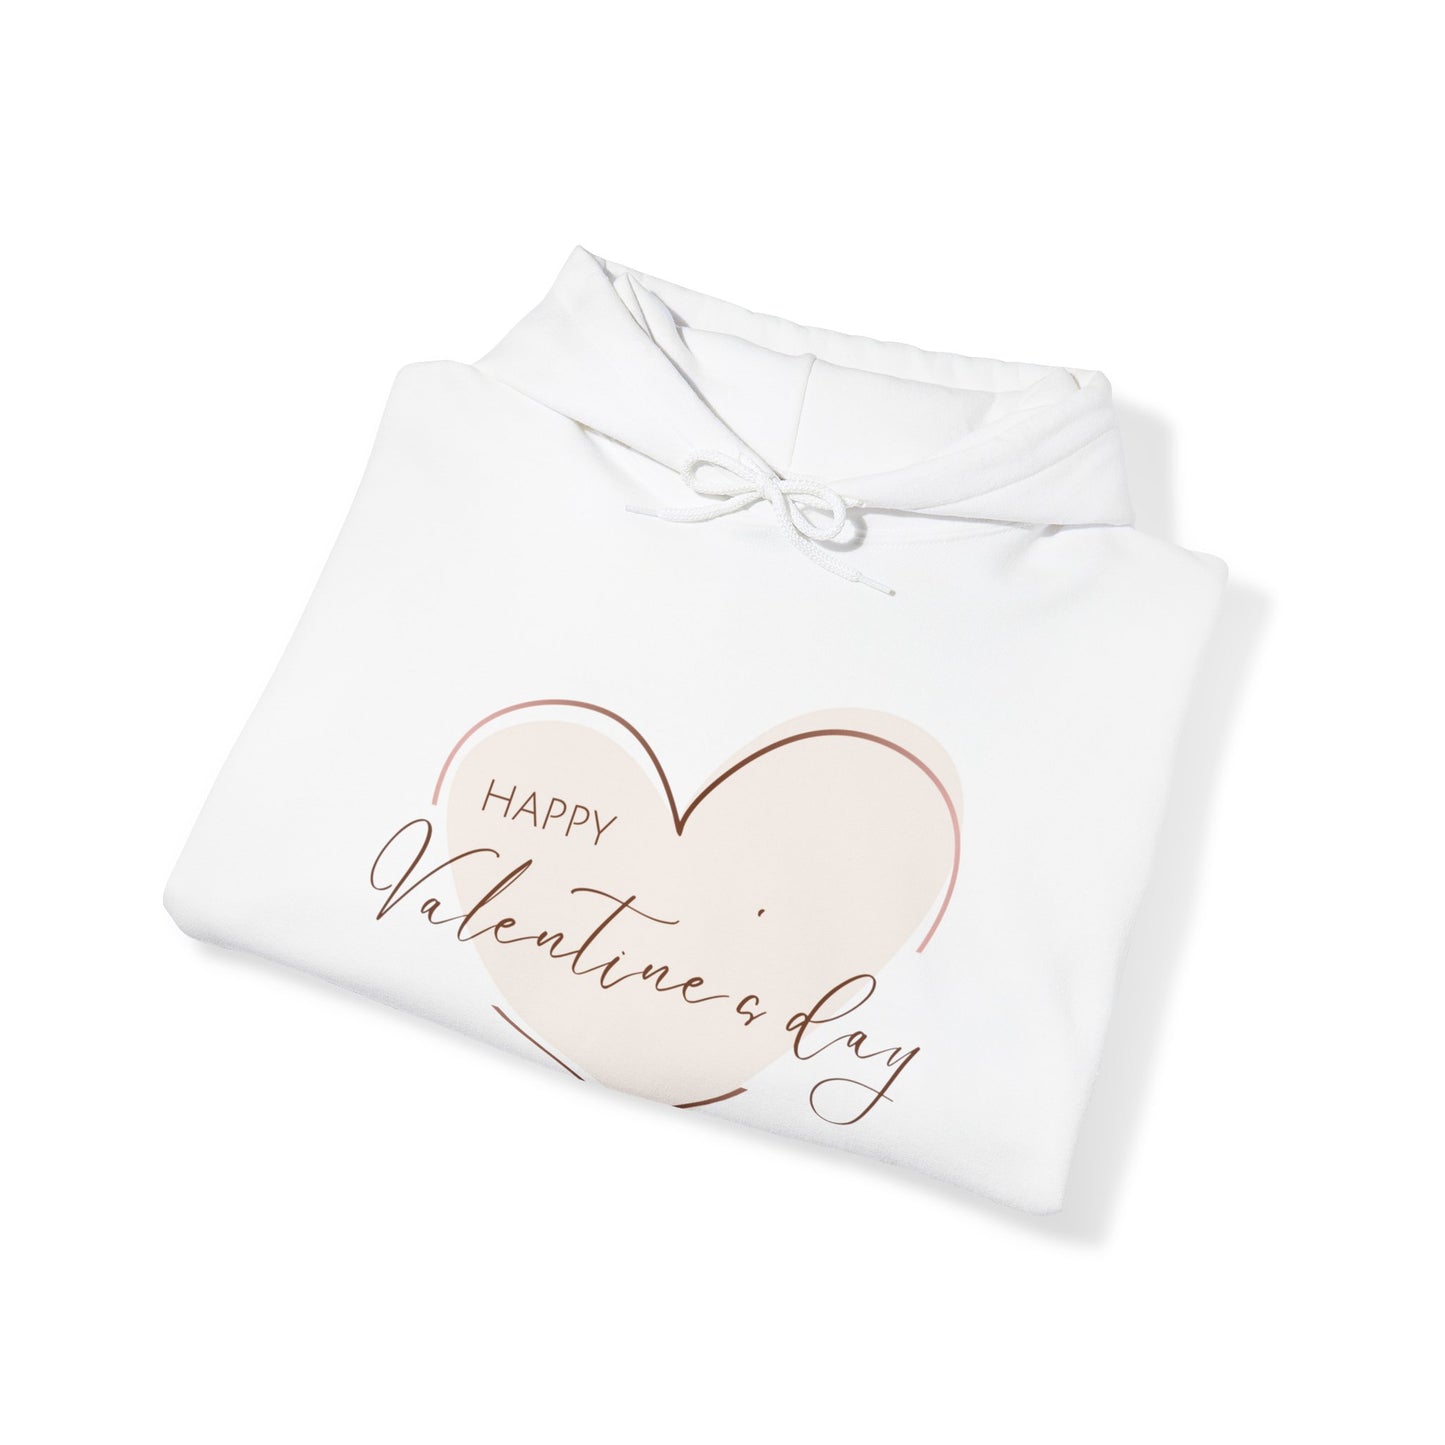 Valentine Sweatshirt, Unisex Heavy Blend™ Hooded Sweatshirt for Her, Valentine Gift